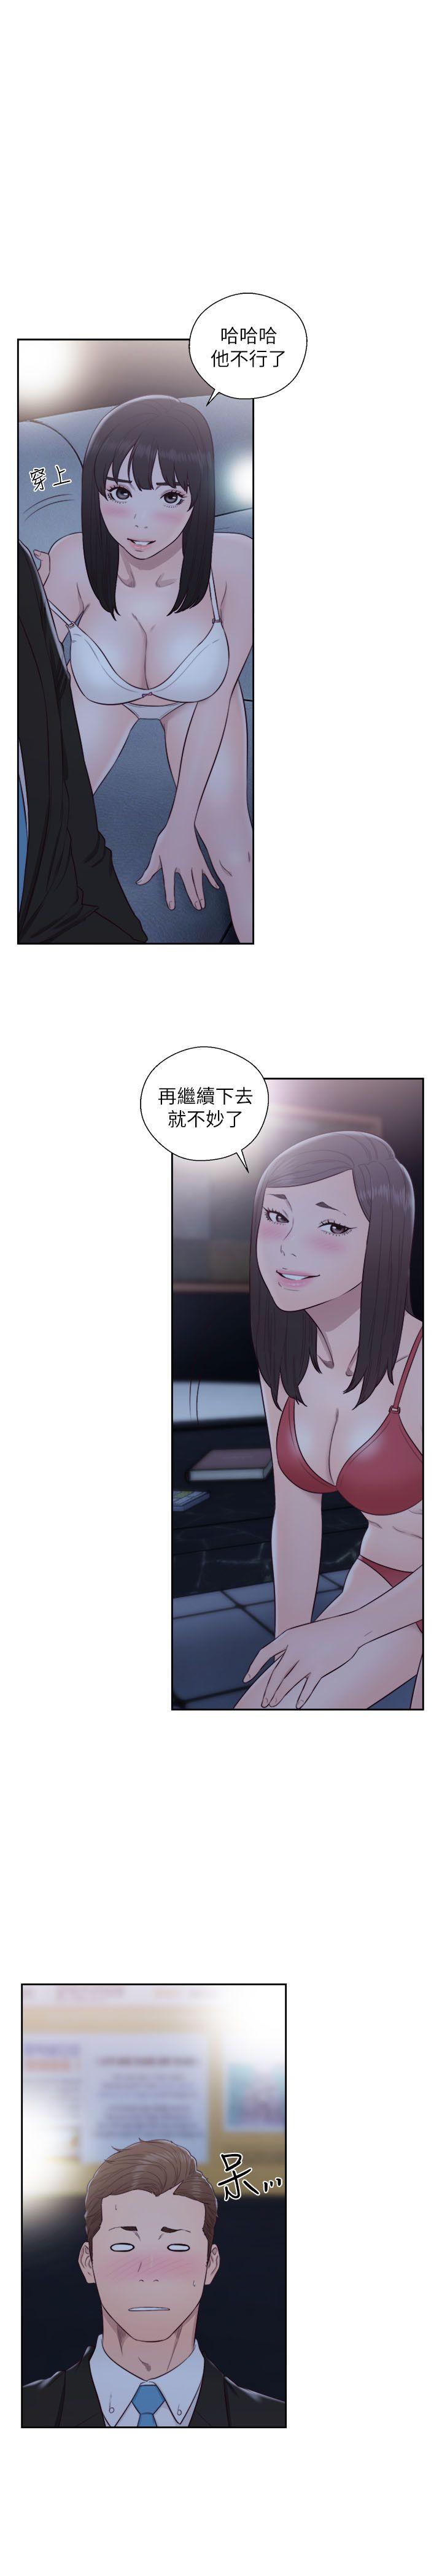 韩国污漫画 解禁:初始的快感 第63话-允斋和夏恩的身体服务 5